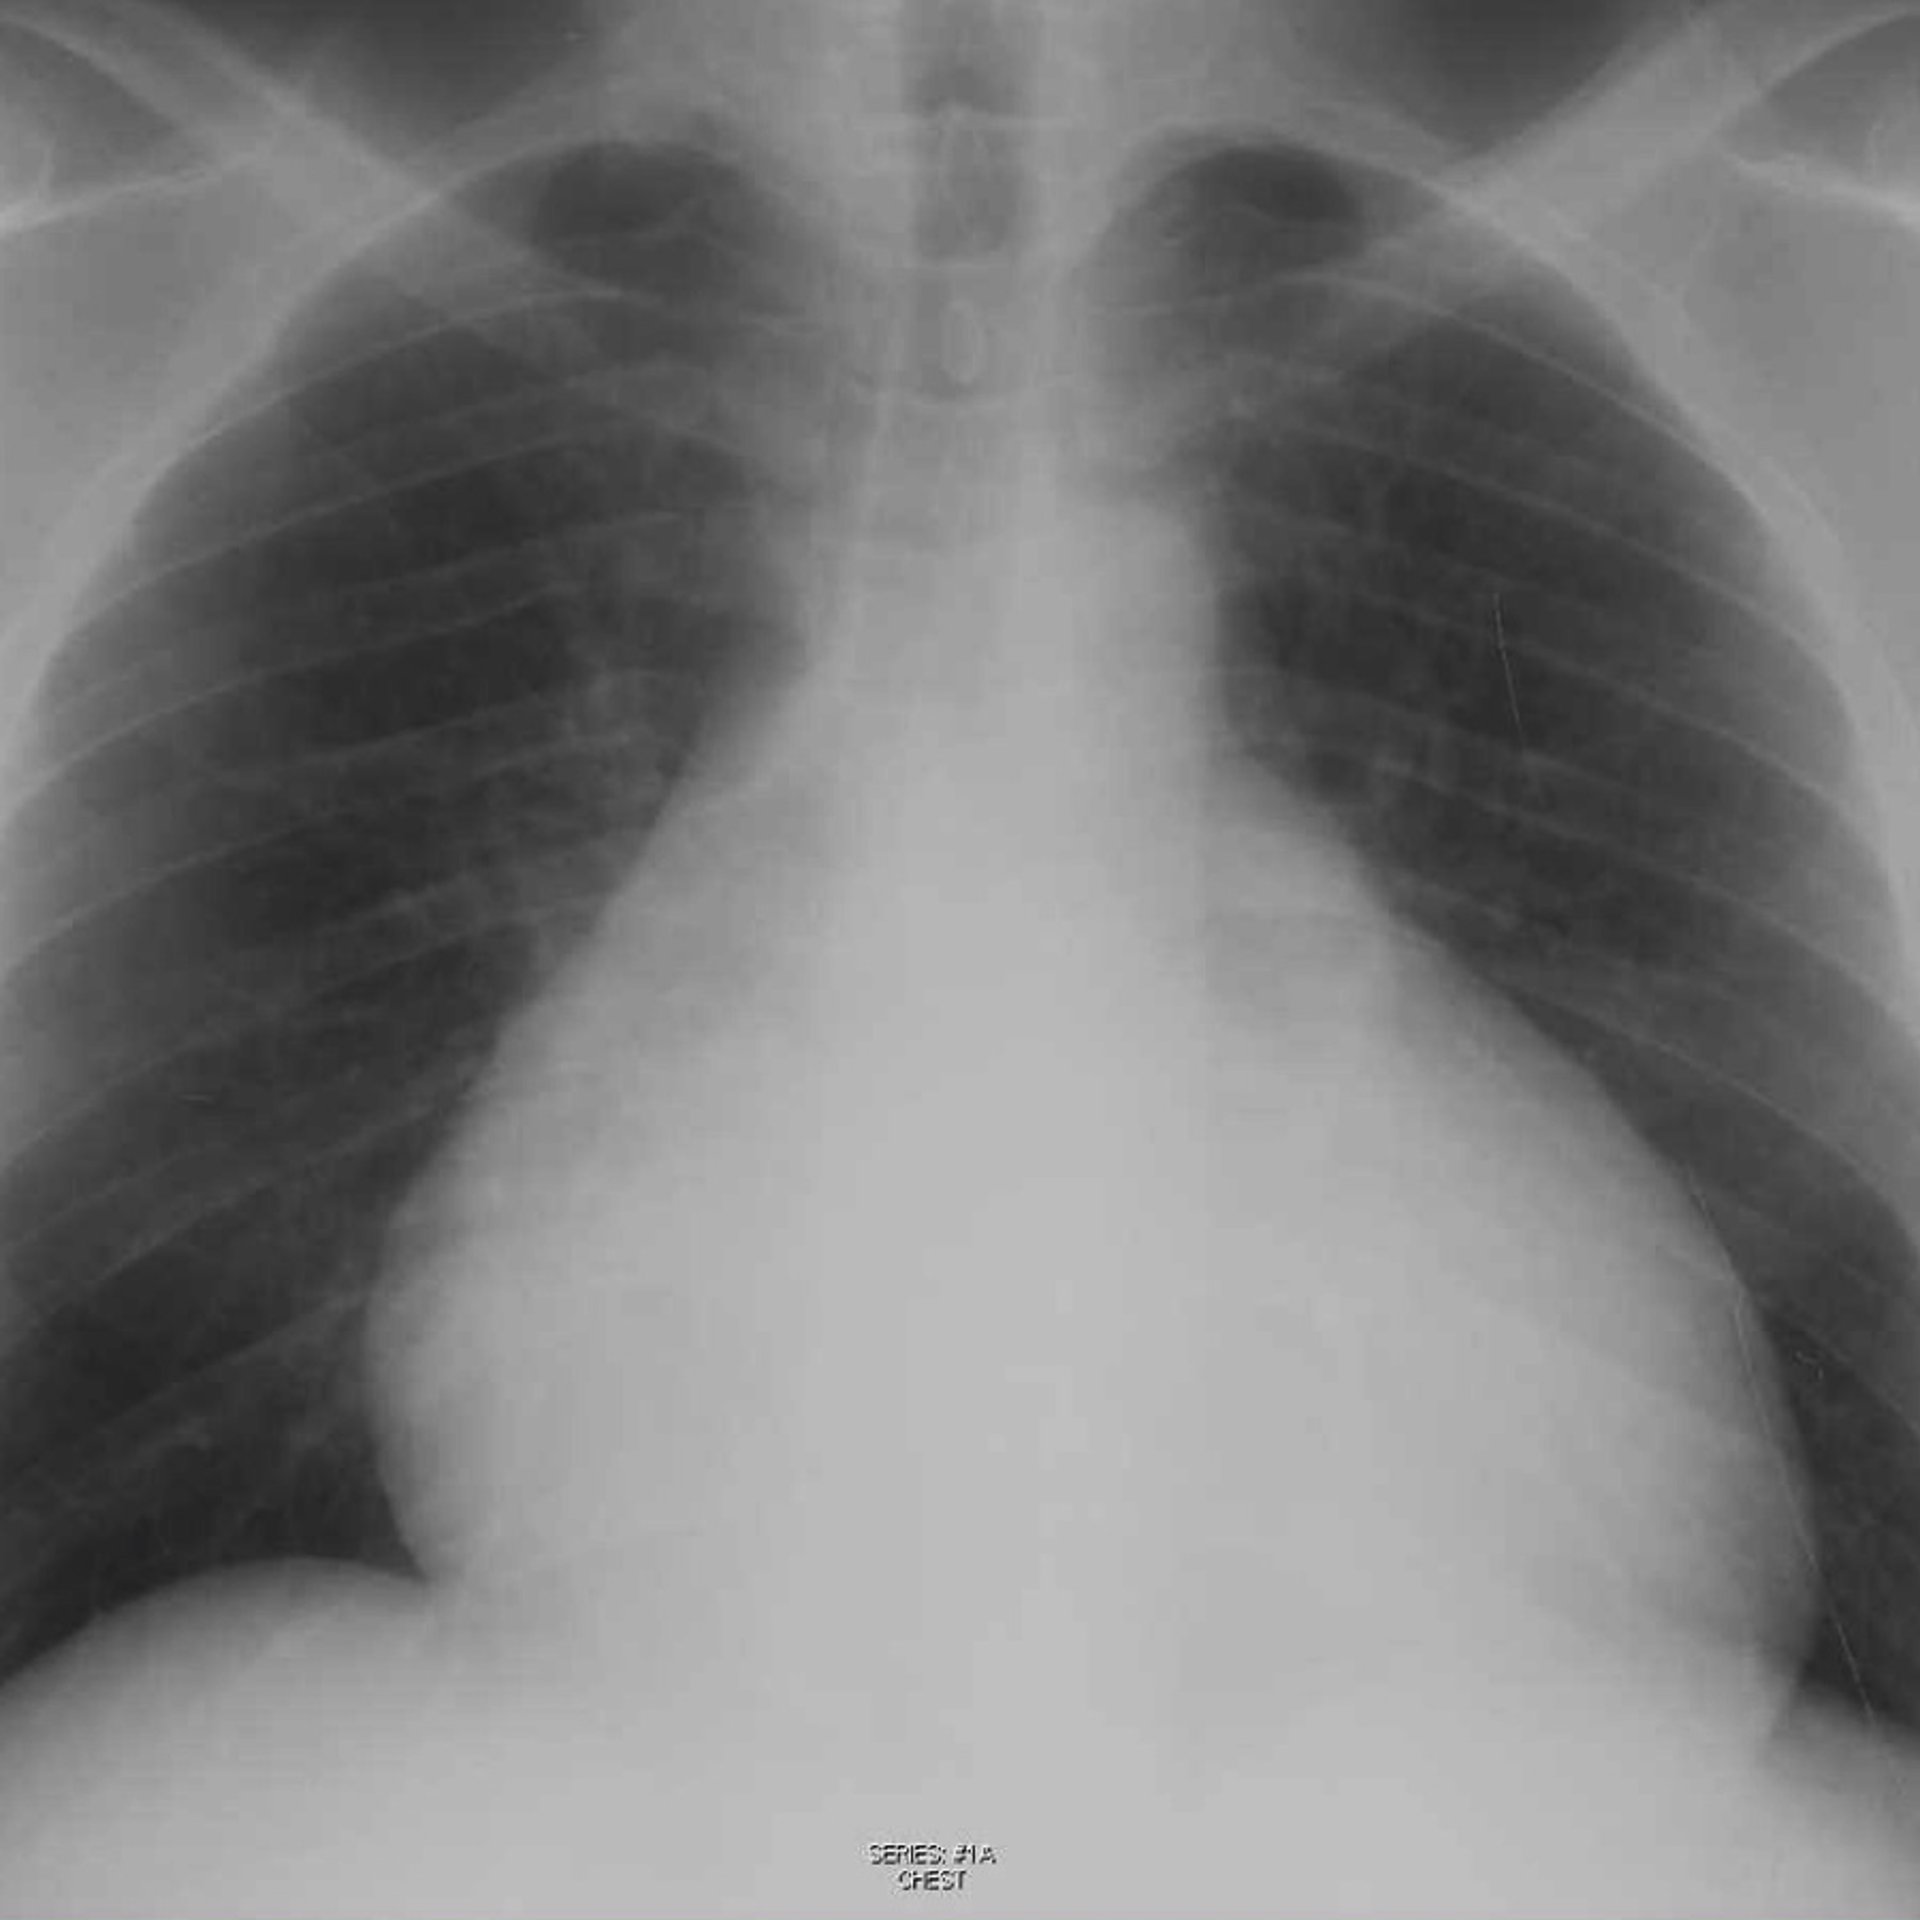 心嚢液貯留のある患者の胸部X線